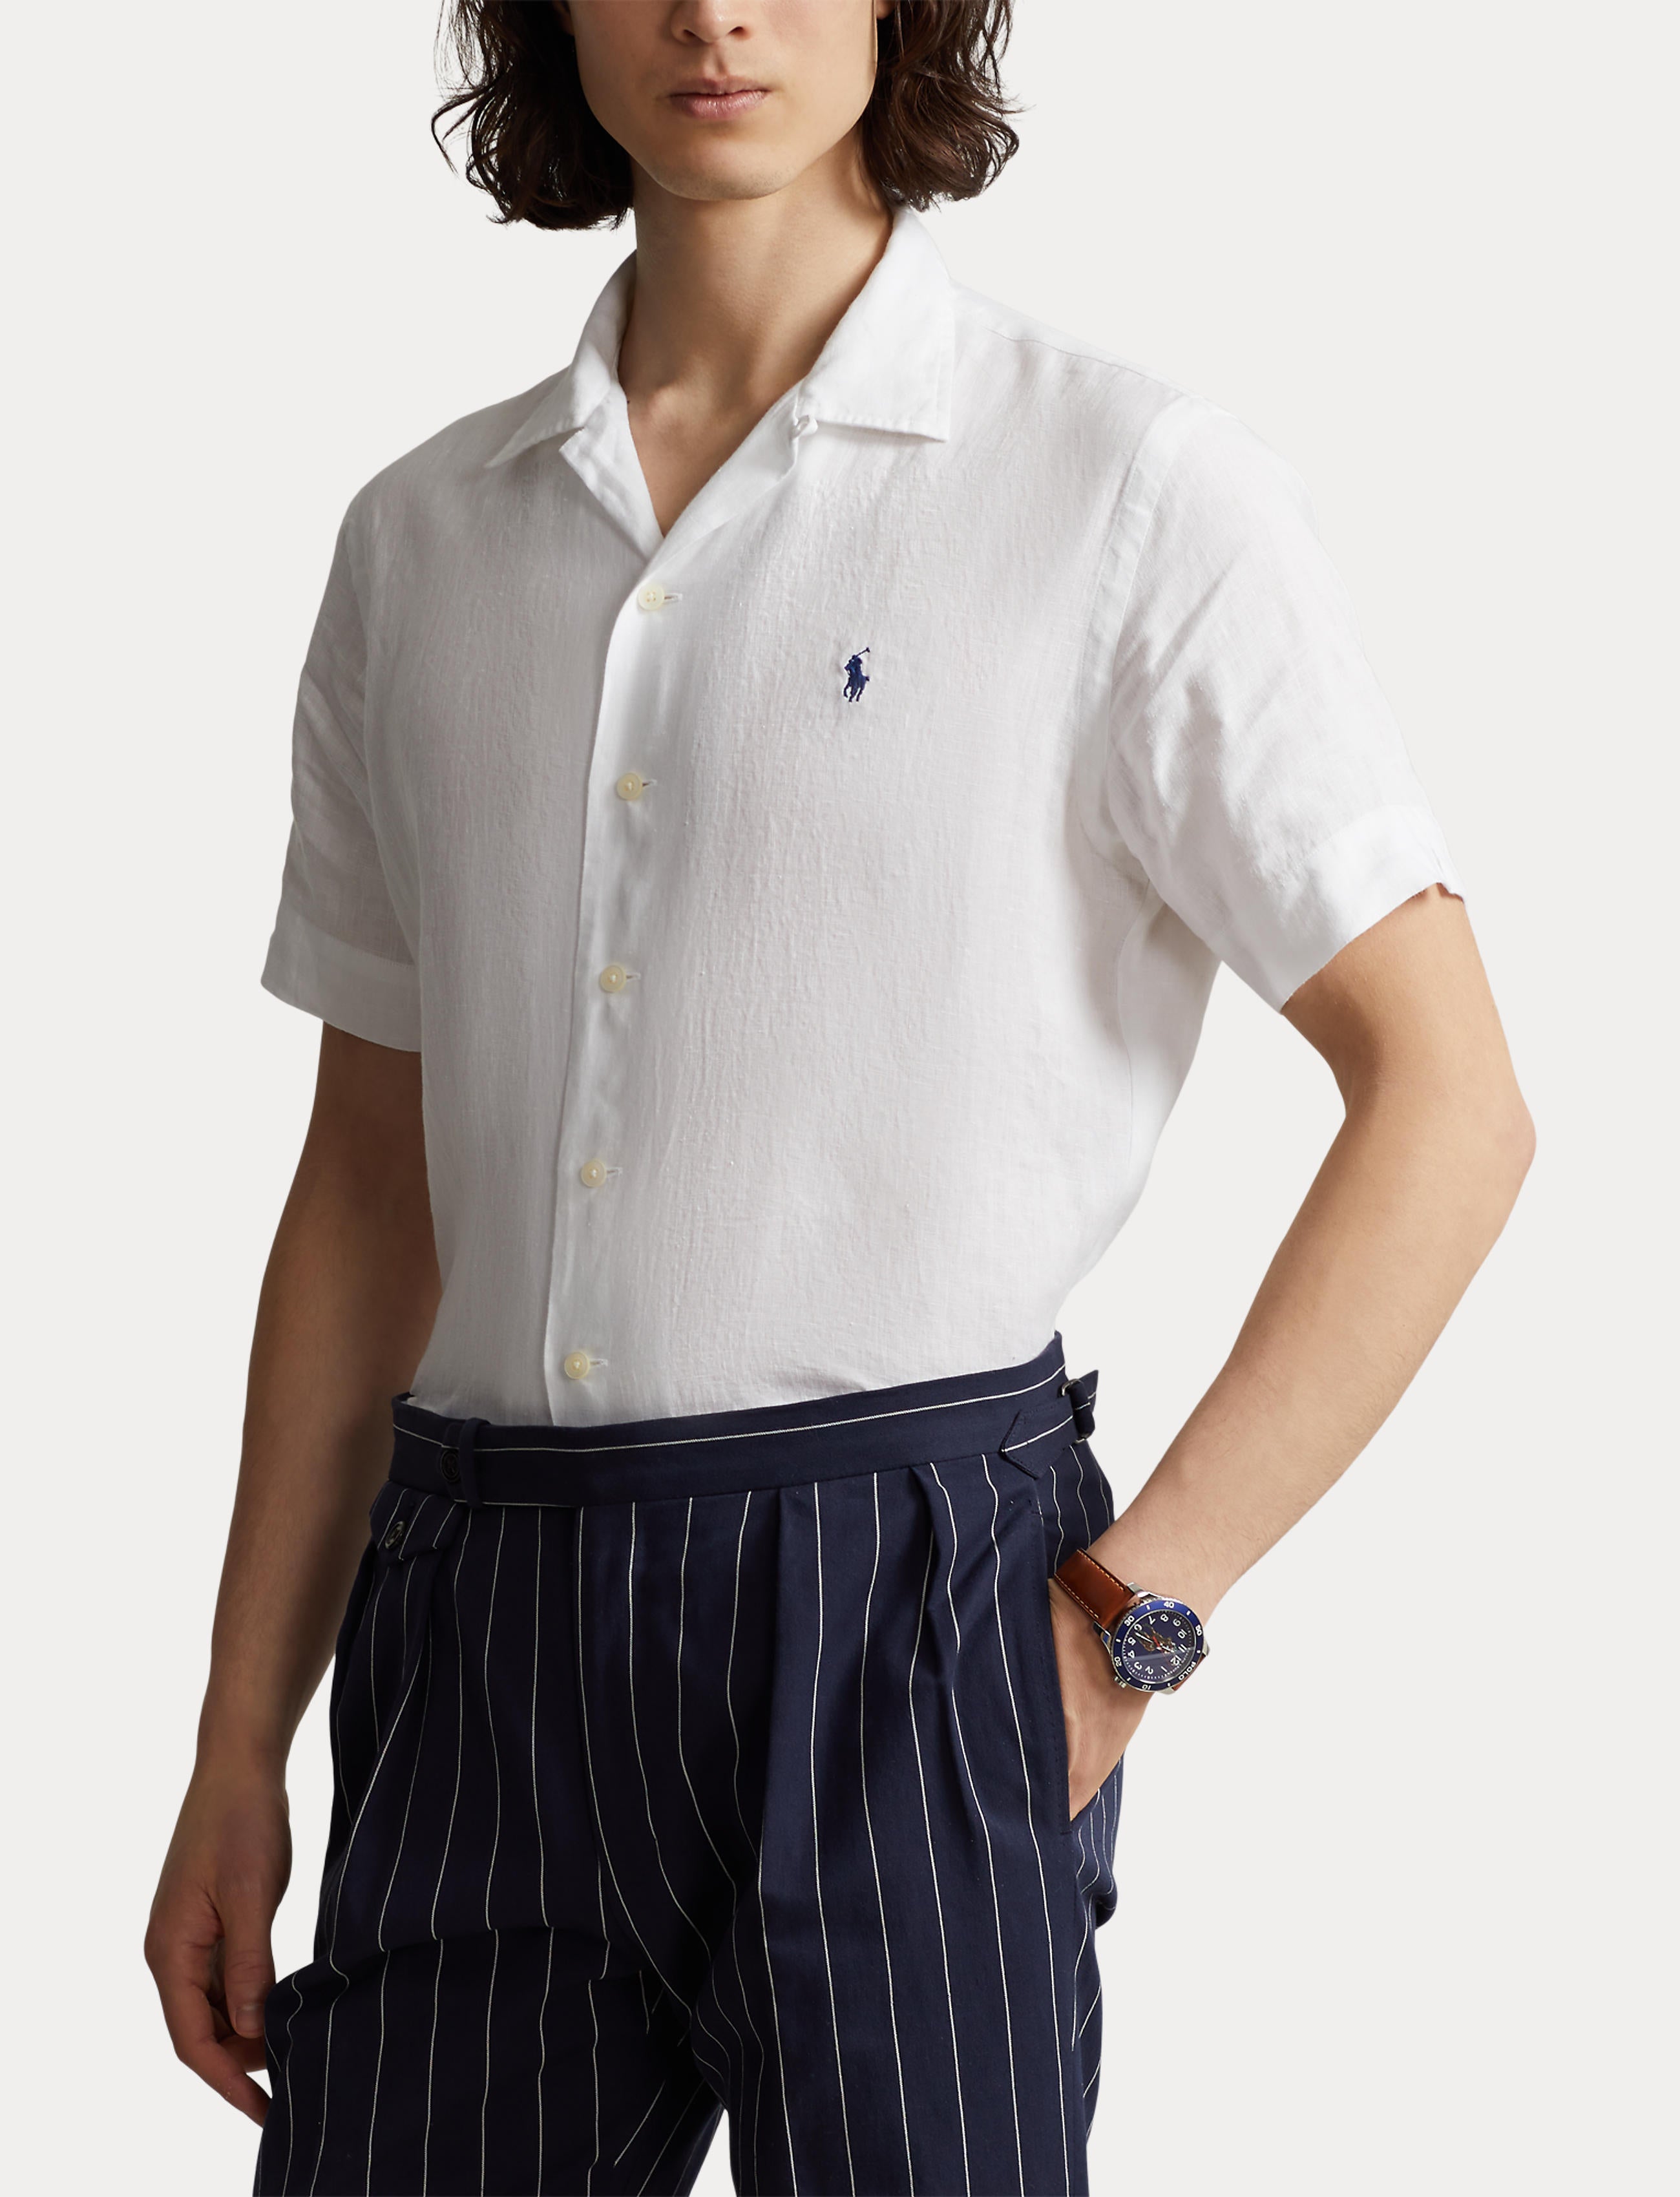 Polo Ralph Lauren SS Linen Sport Shirt White – routleys.com.au